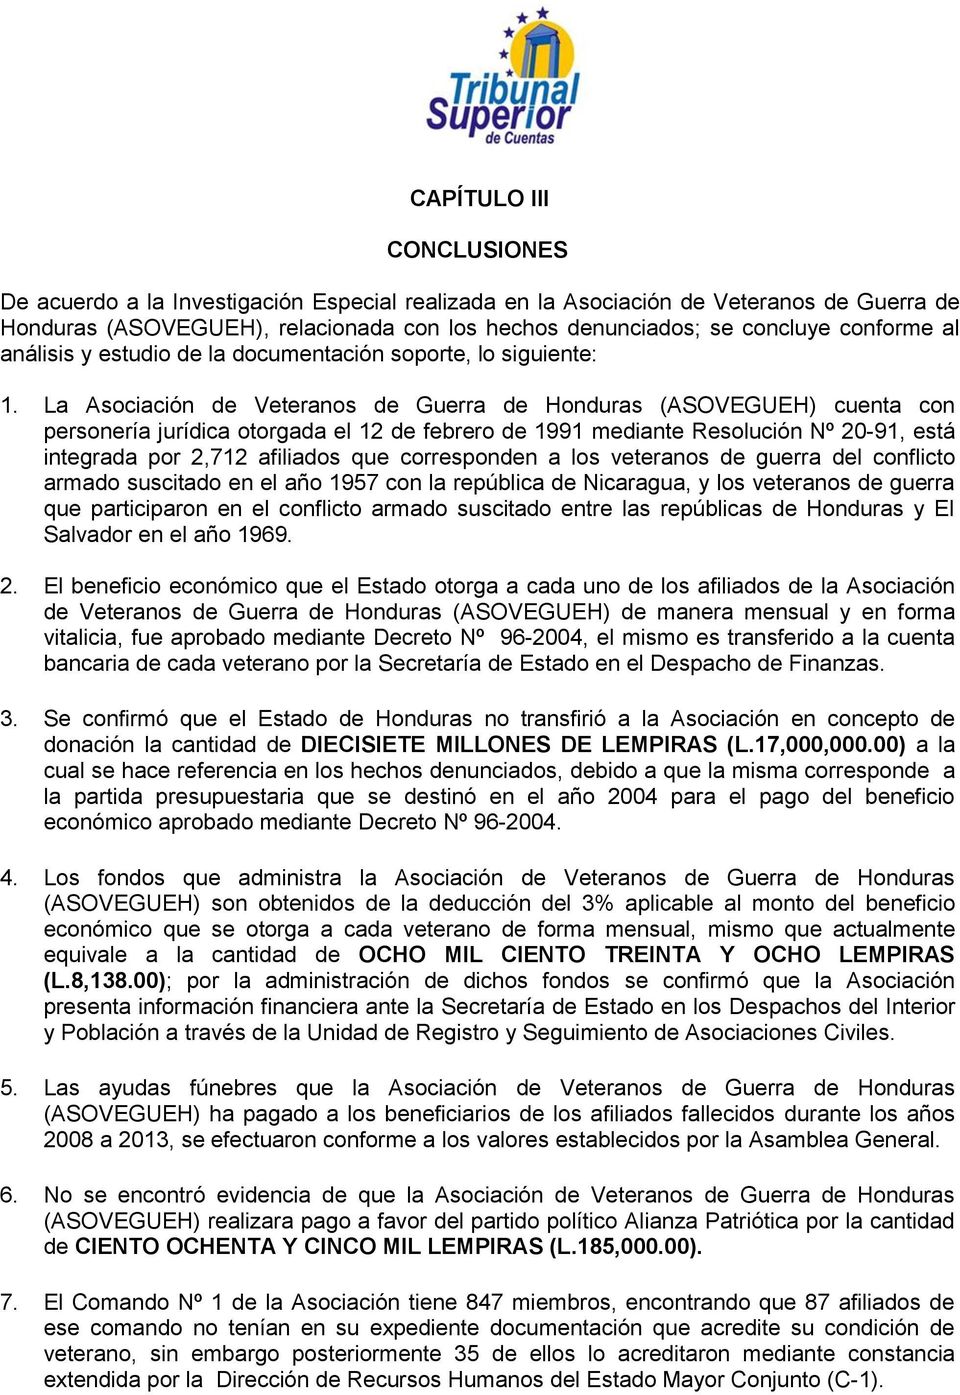 La Asociación de Veteranos de Guerra de Honduras (ASOVEGUEH) cuenta con personería jurídica otorgada el 12 de febrero de 1991 mediante Resolución Nº 20-91, está integrada por 2,712 afiliados que